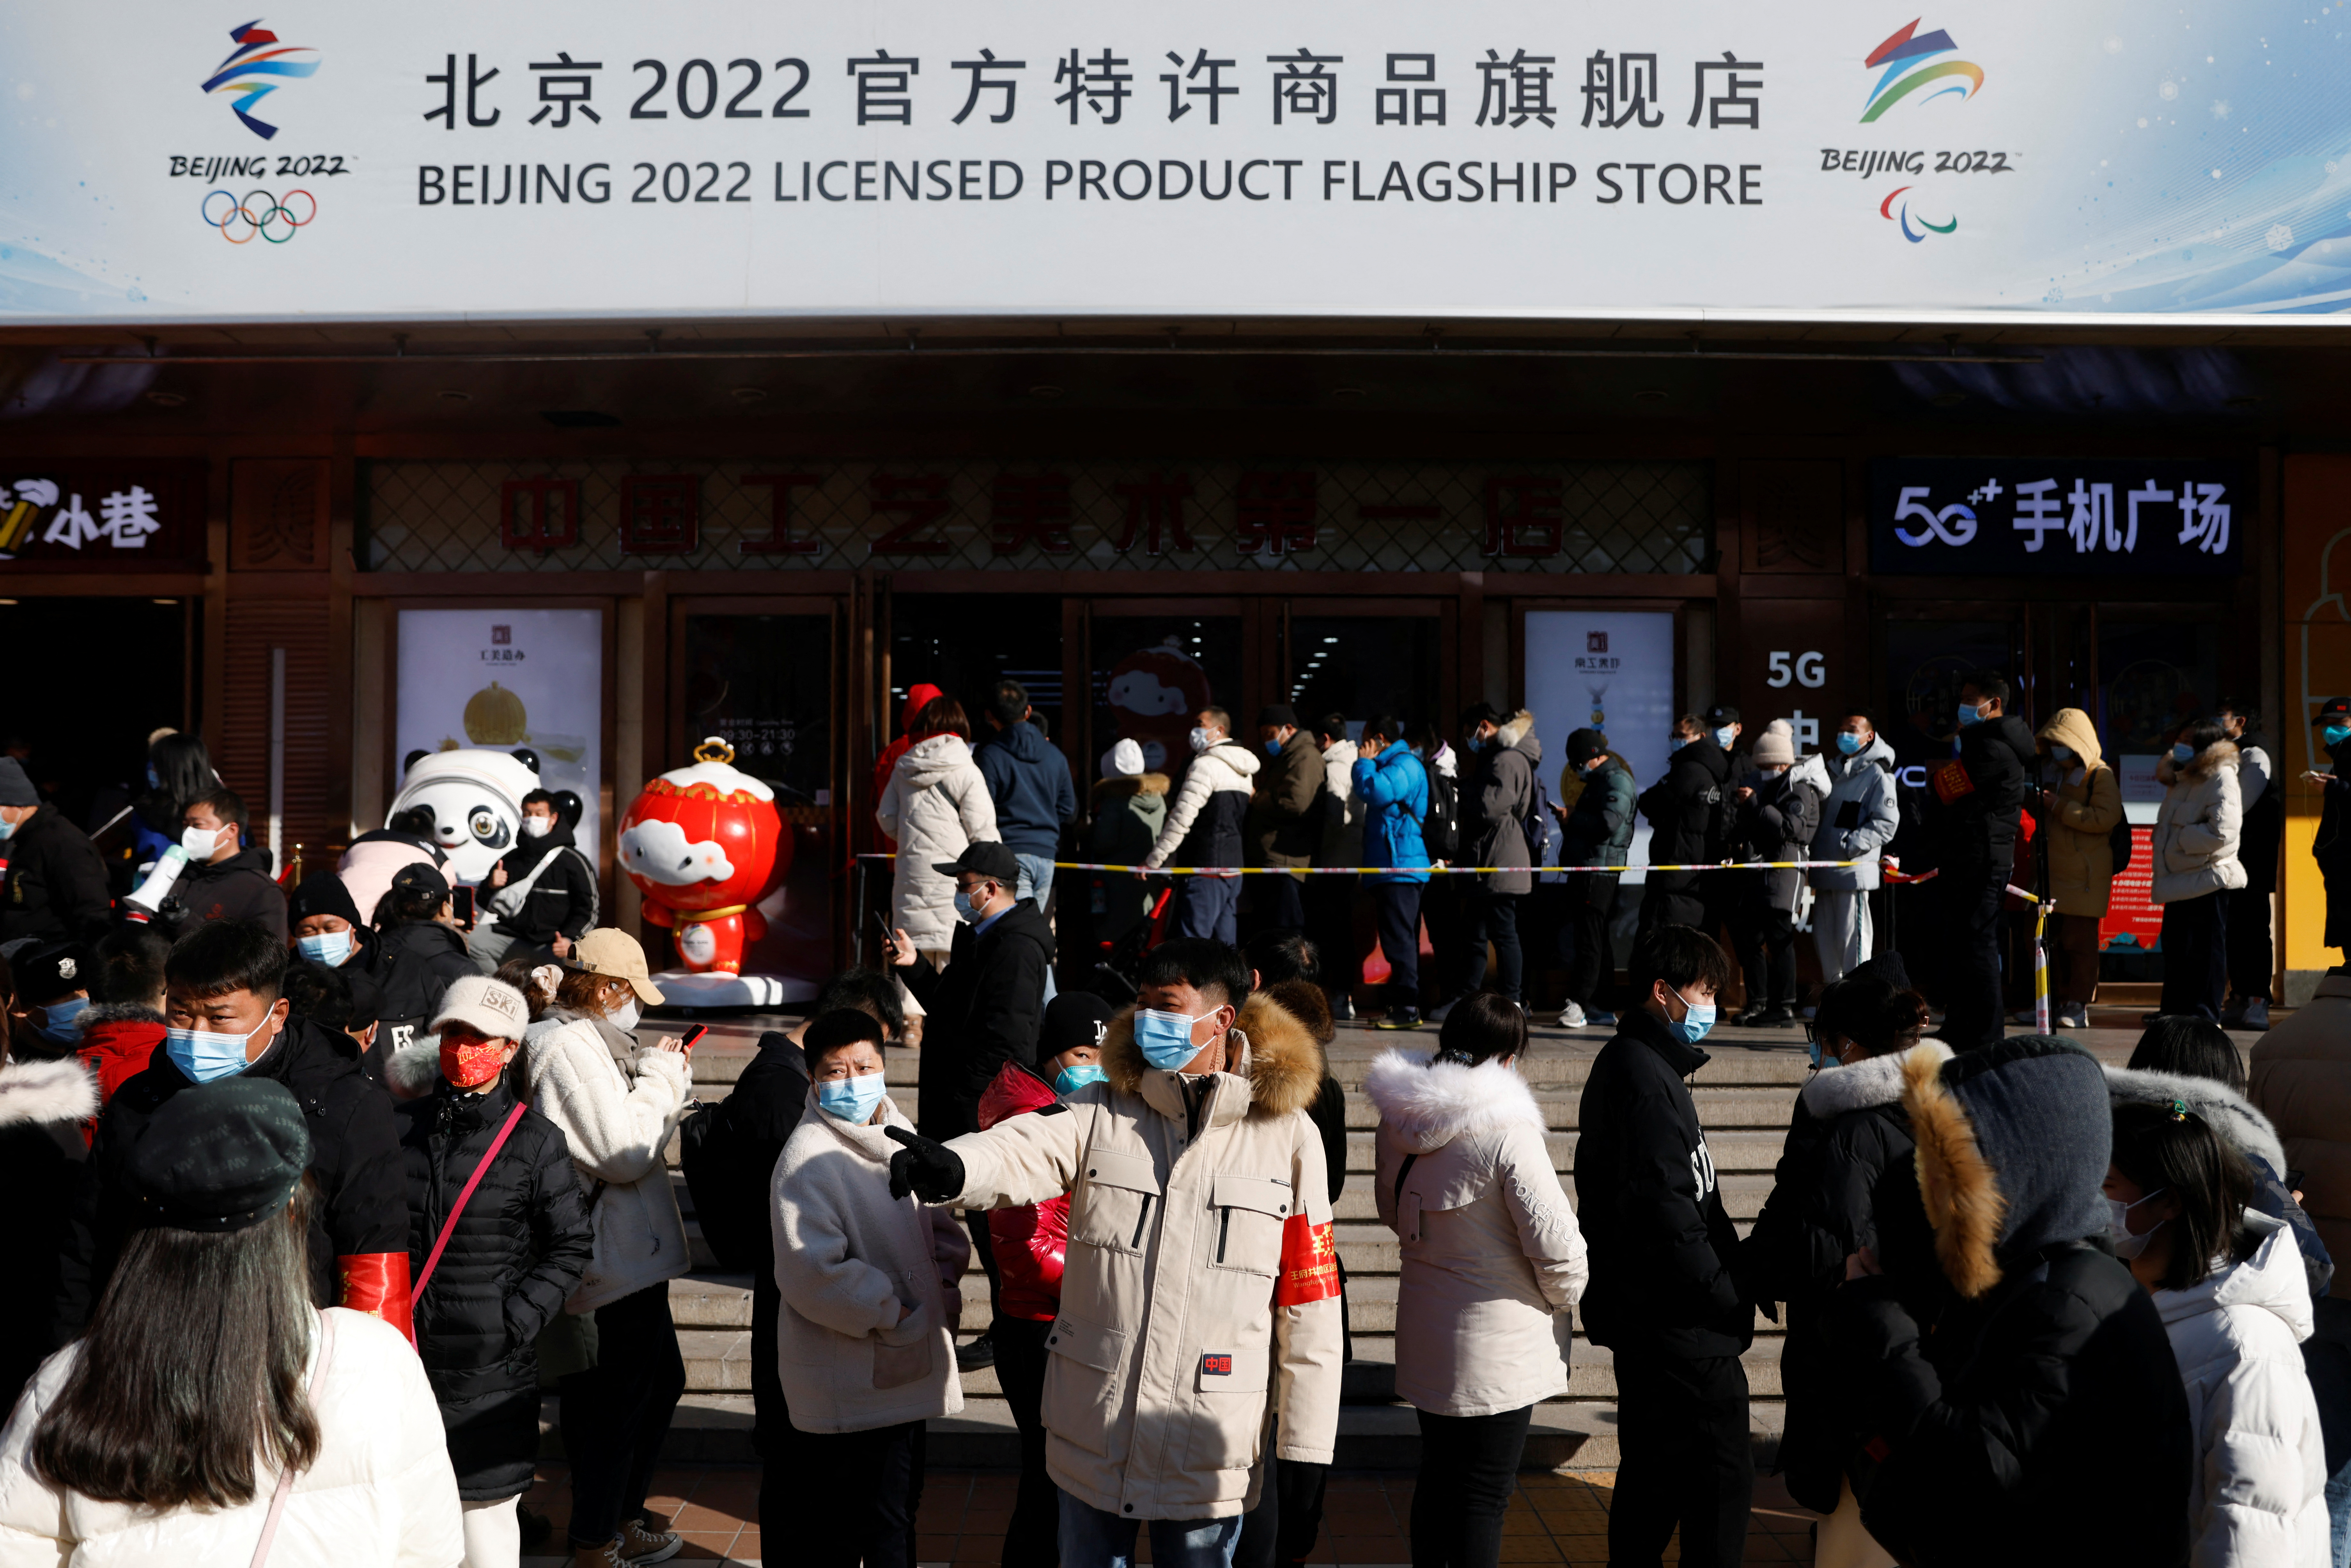 Flagship merchandise store for the Beijing 2022 Winter Olympics, in Beijing